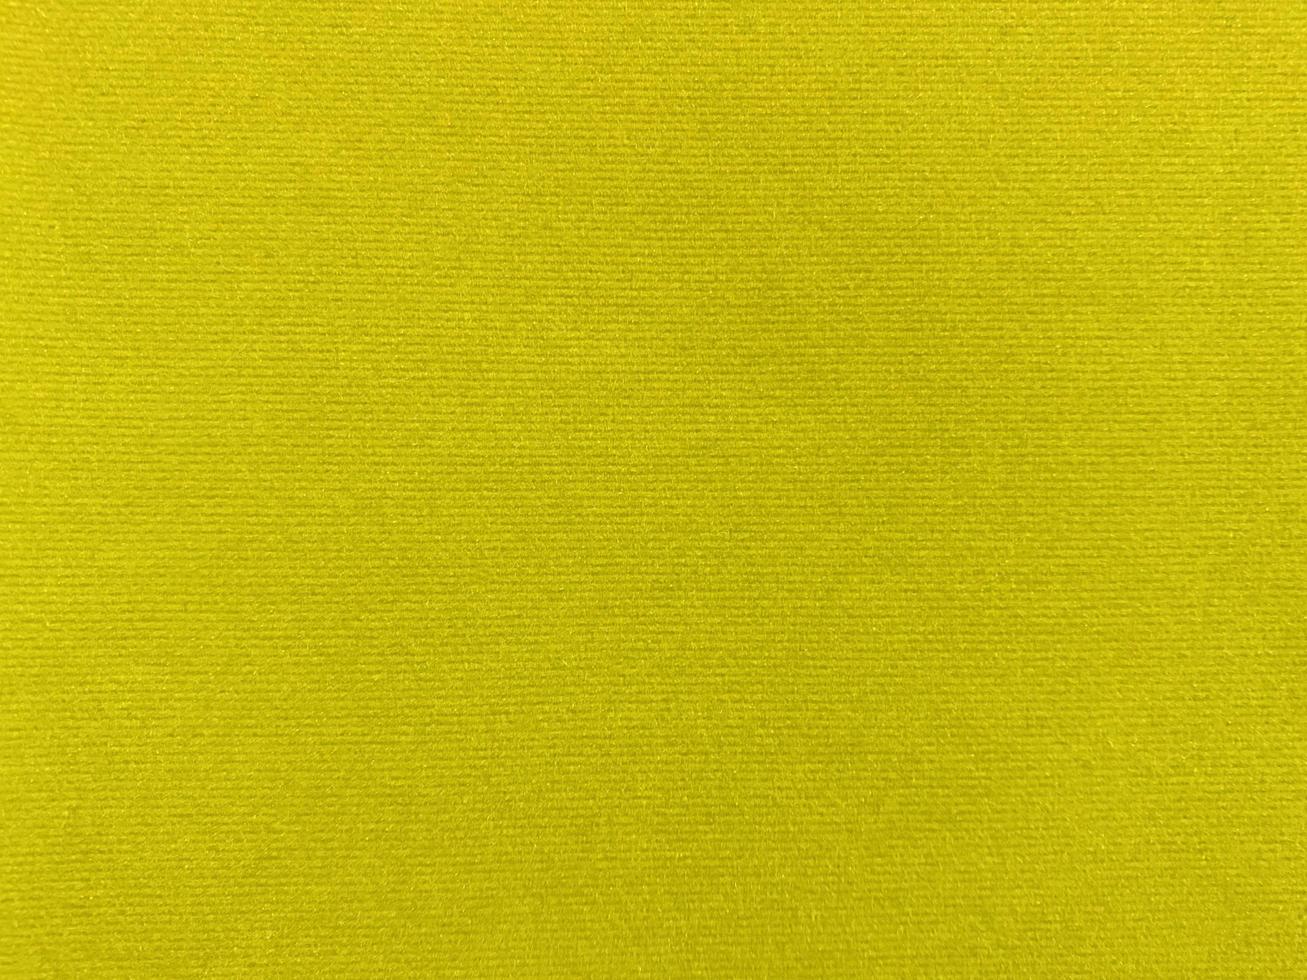 textura de tecido de veludo amarelo usada como plano de fundo. fundo de tecido amarelo vazio de material têxtil macio e liso. há espaço para o texto.. foto